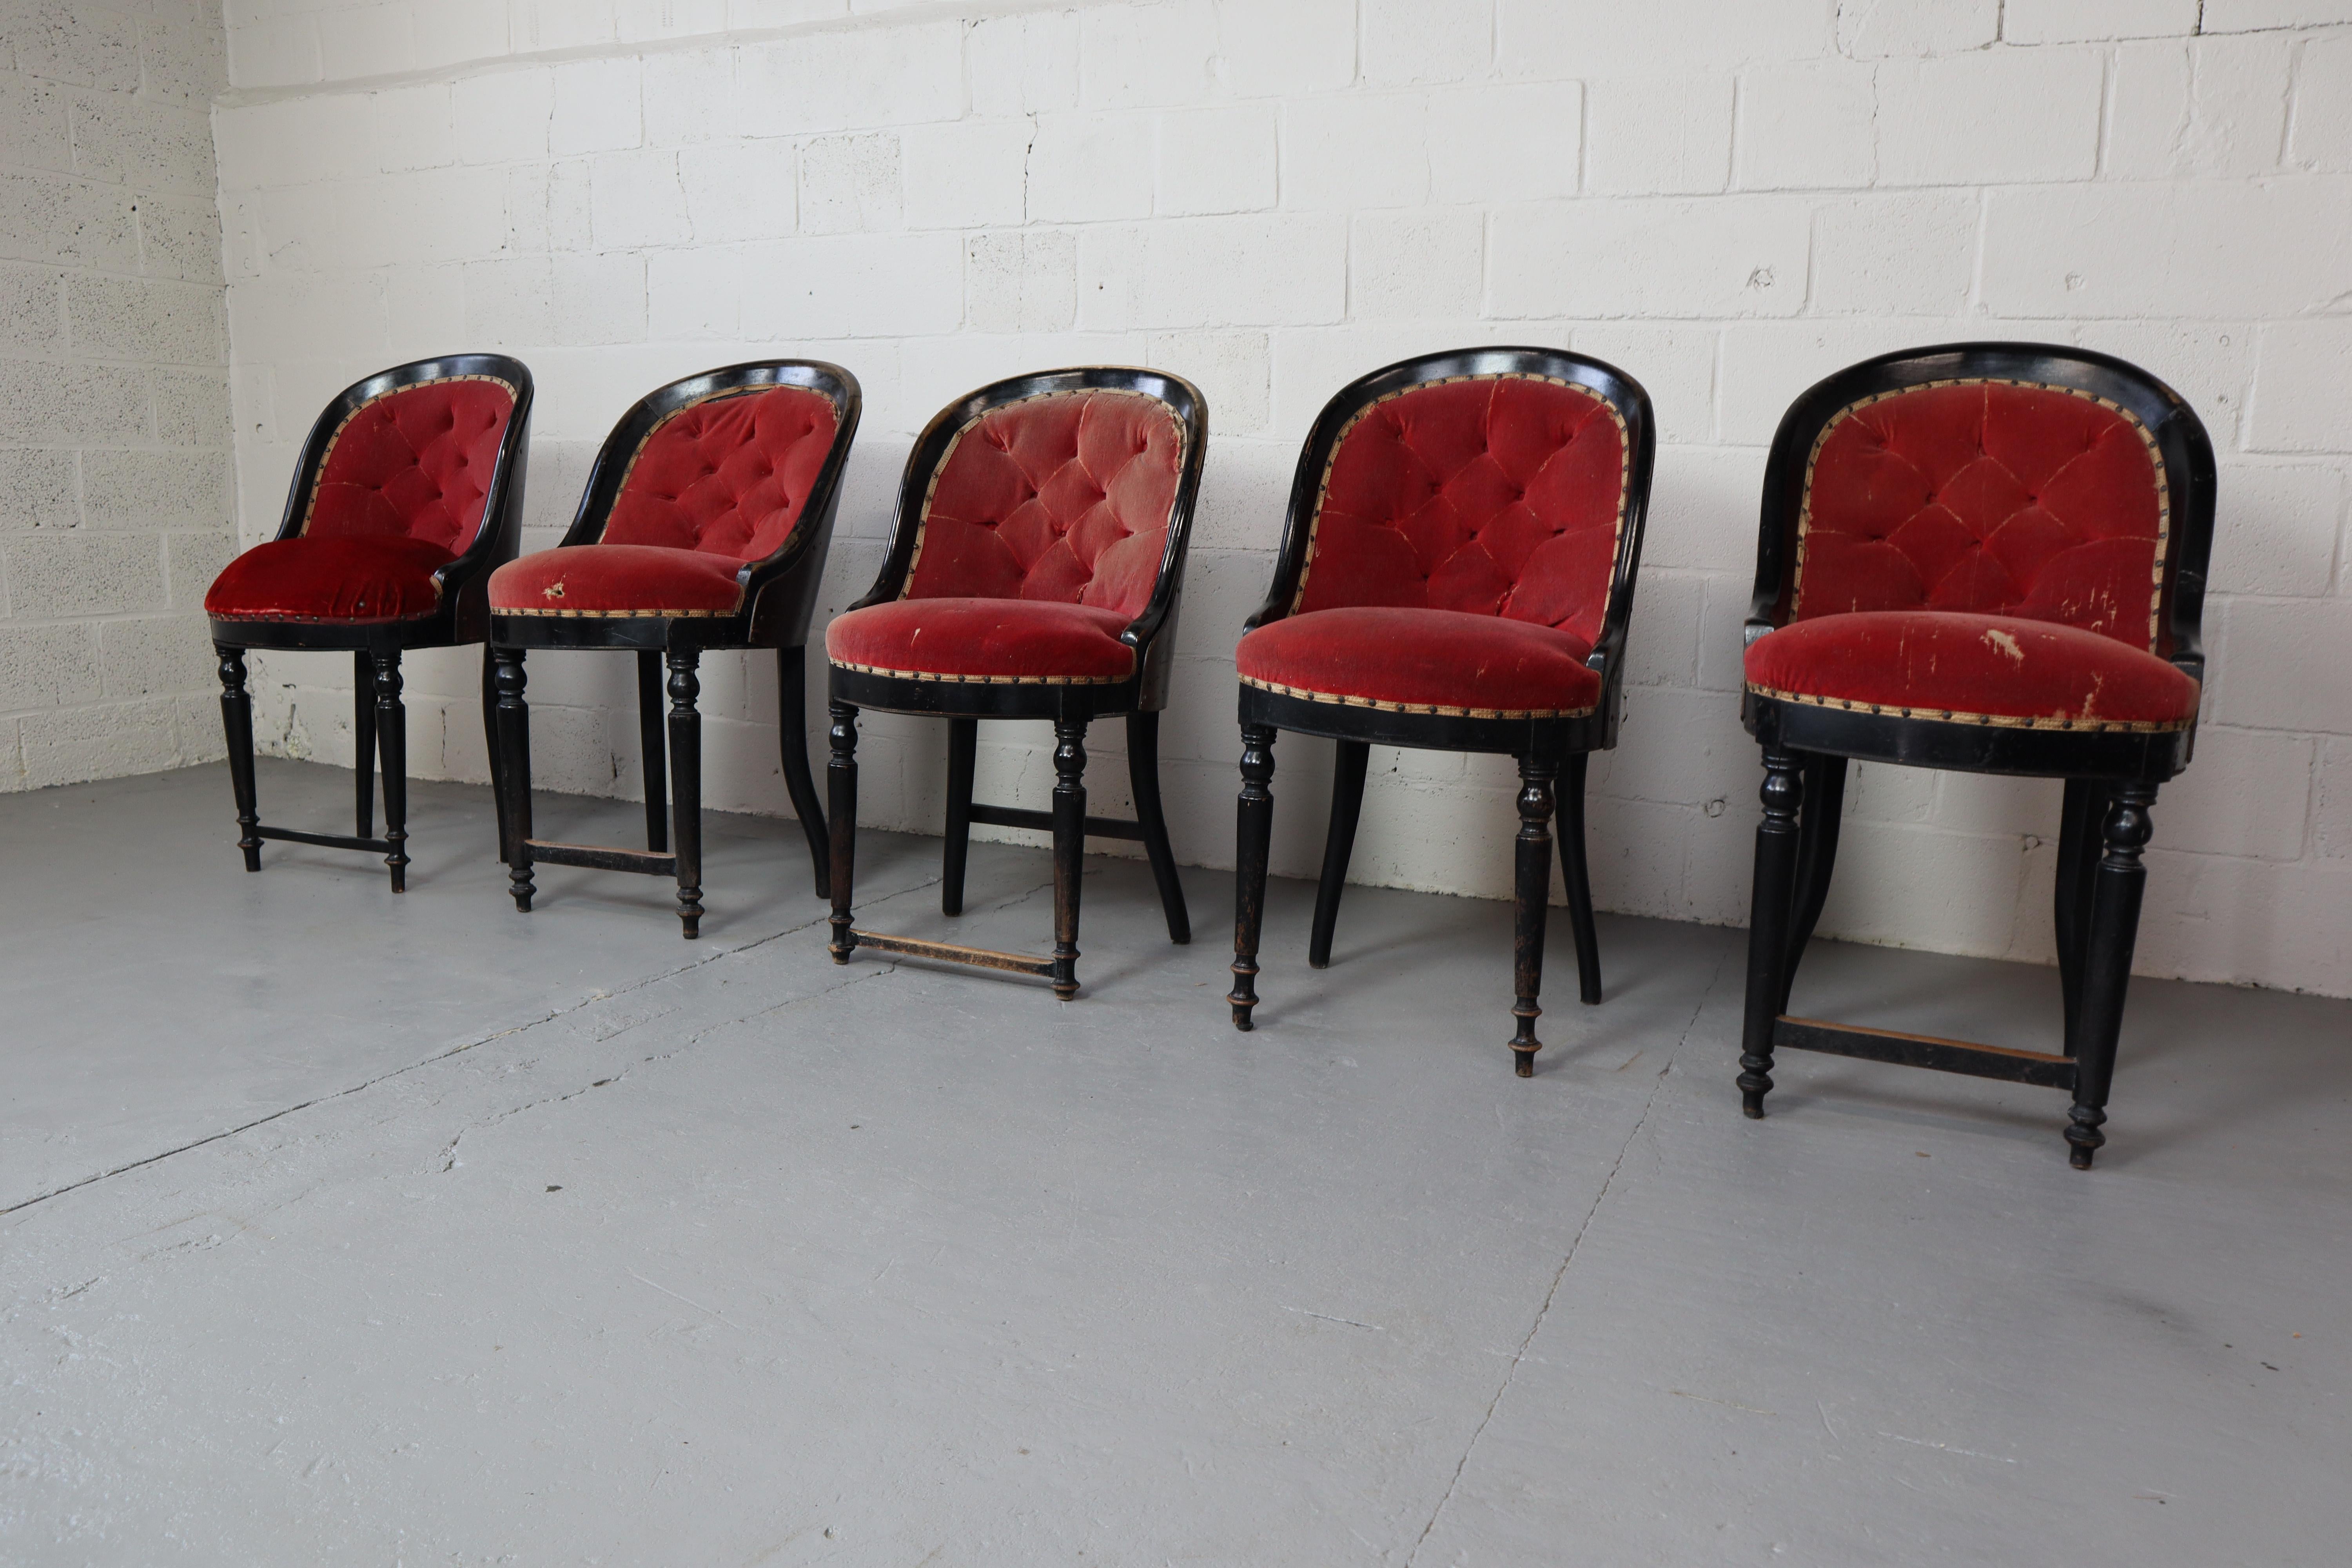 Ensemble de cinq chaises de théâtre antiques, avec une belle patine ! Sellerie d'origine en velours rouge !
ils proviennent d'un ancien théâtre de Bruges (Belgique).